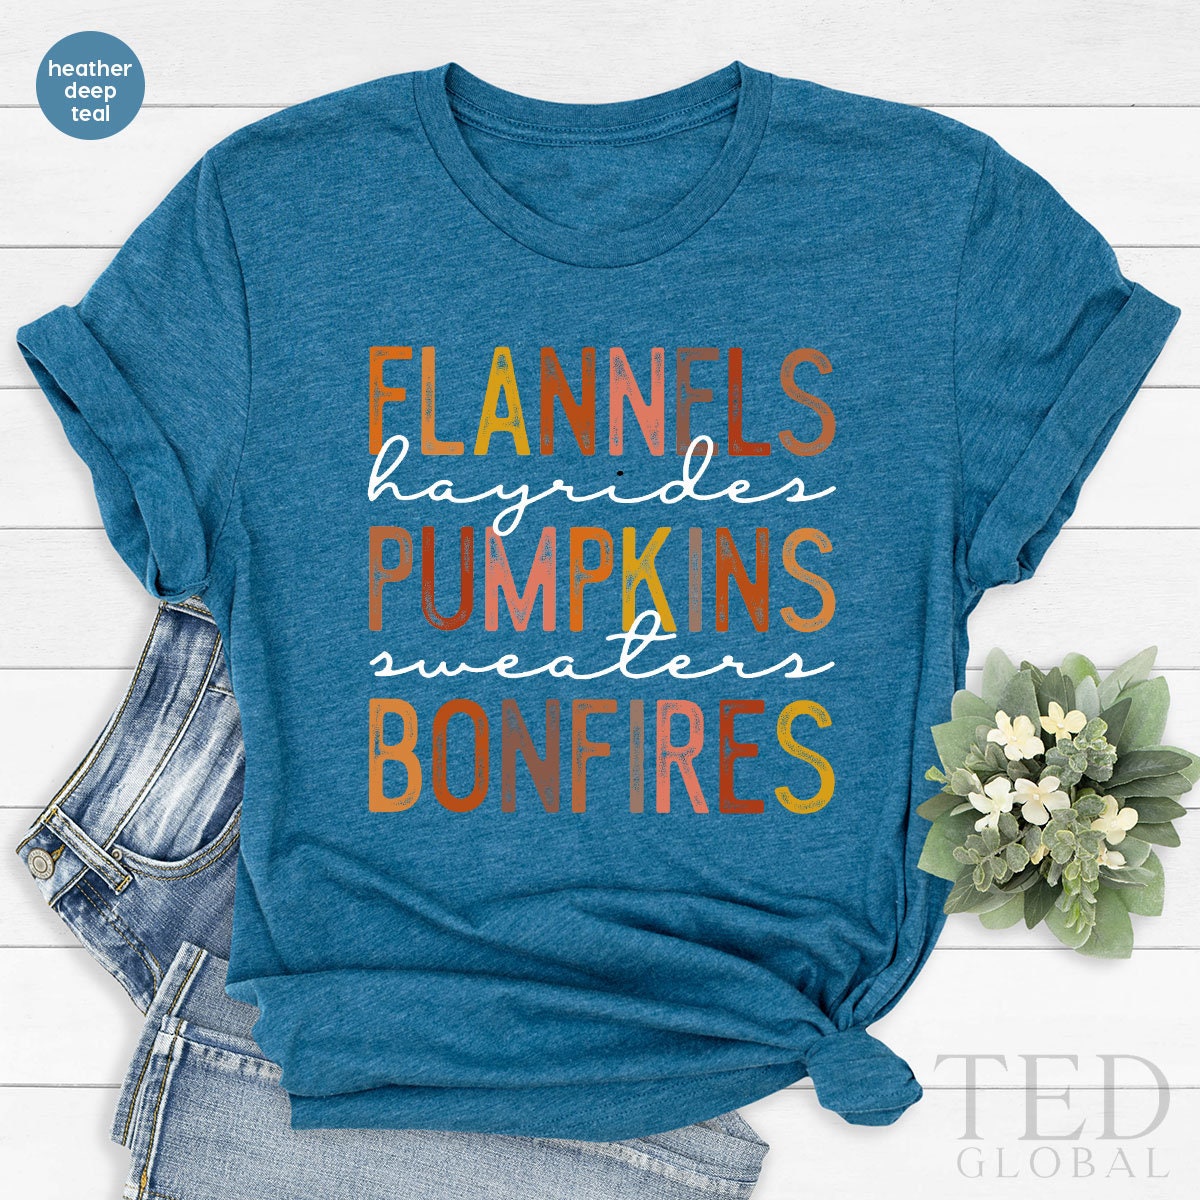 Thanksgiving Shirt, Pumpkin Spice Season T Shirt, Cute Fall T Shirt, Autumn Flannels Shirts, Fall Lover Tee, Bonfires T-Shirt, Gift For Her - Fastdeliverytees.com